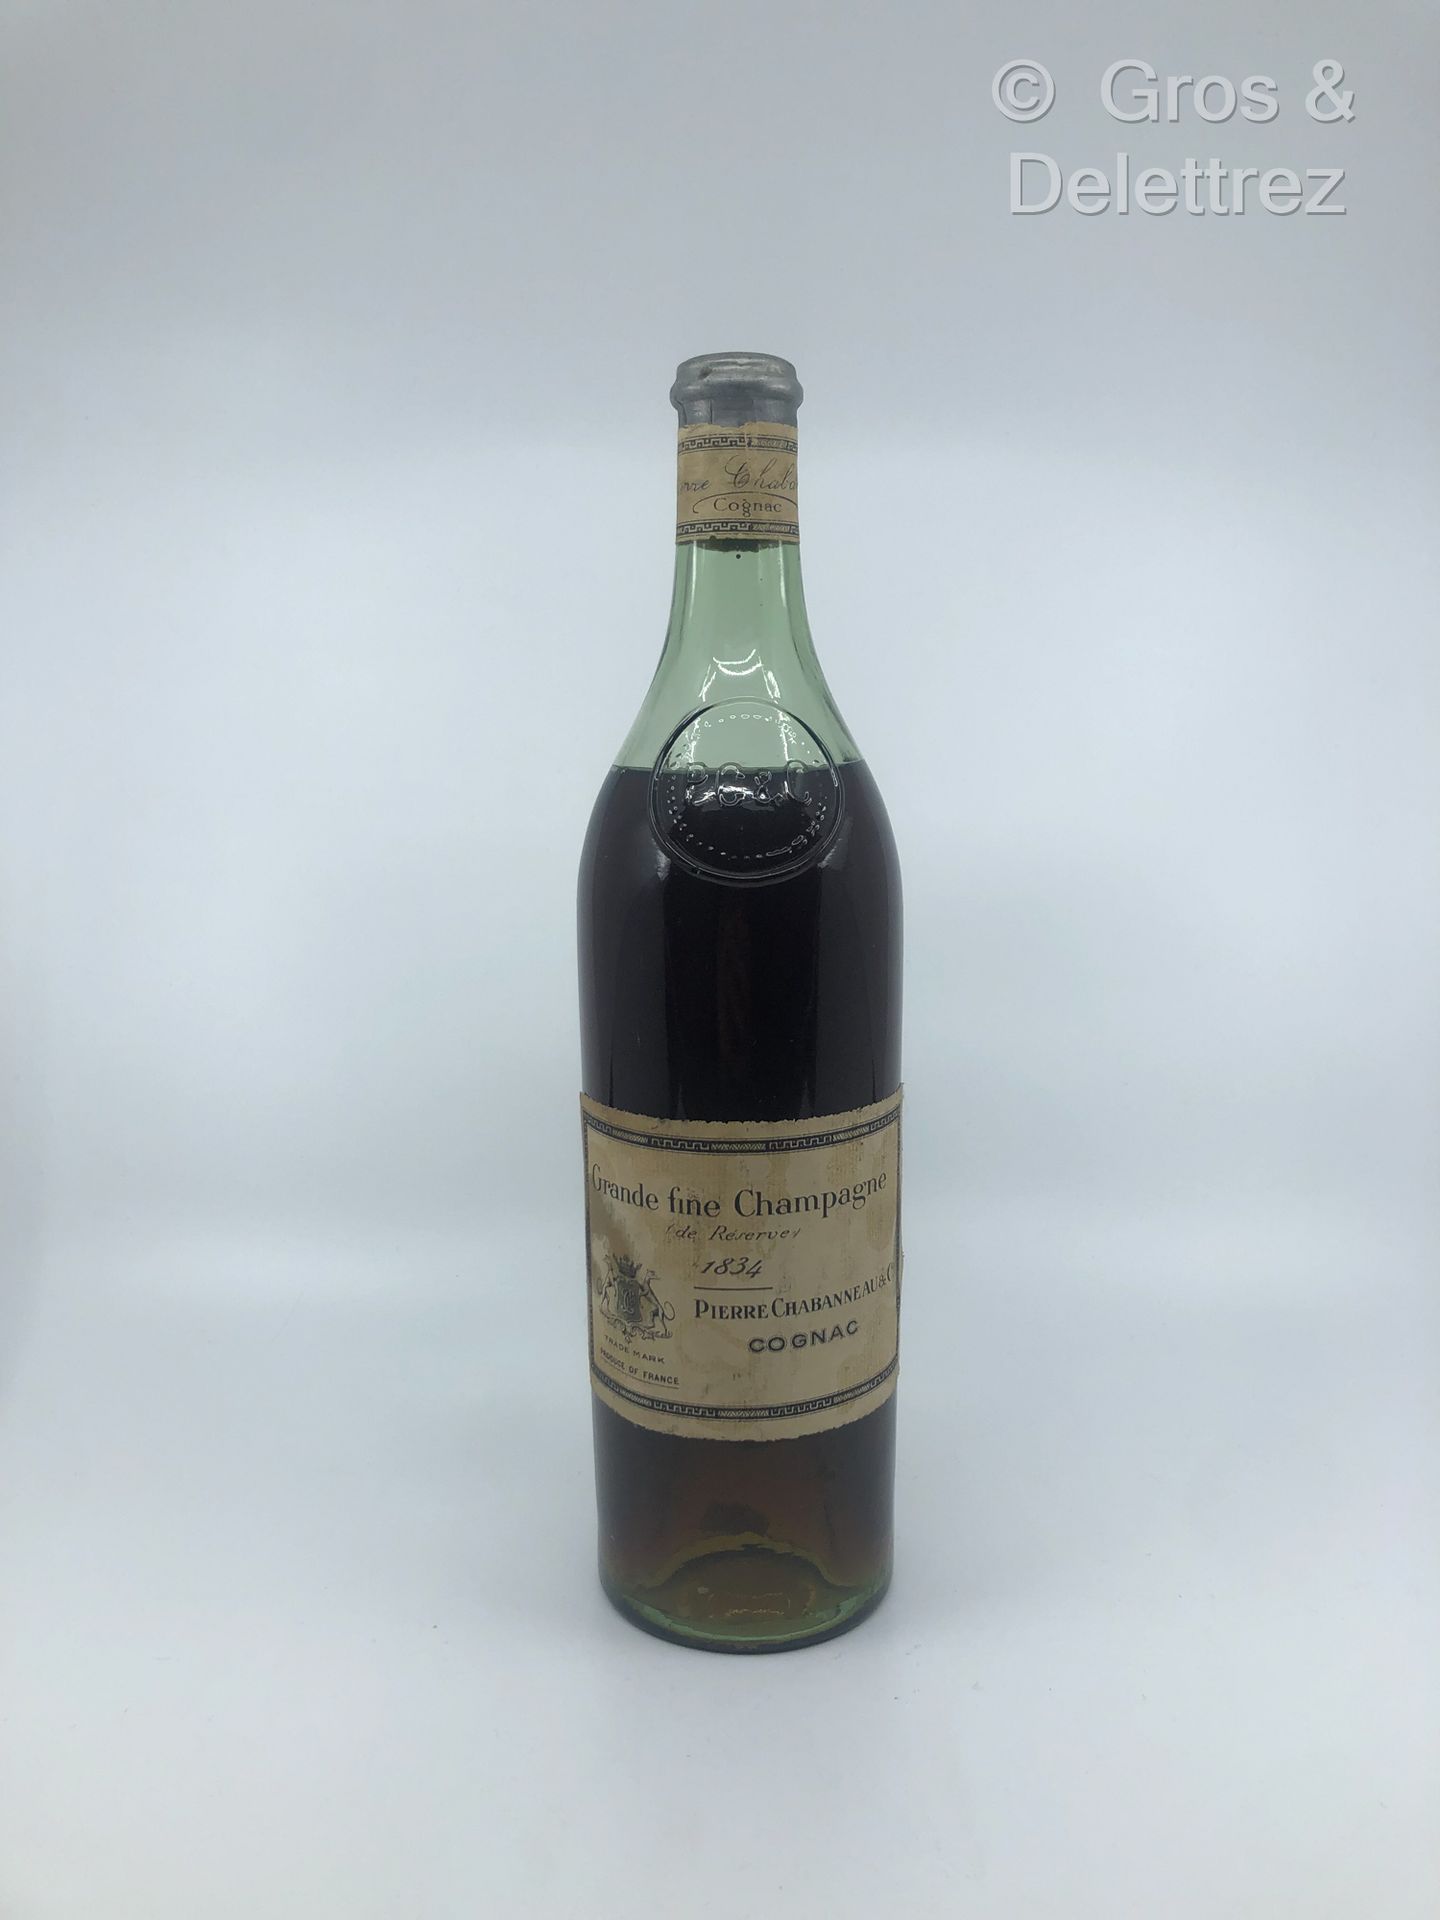 Null Coganc Grande Fine Champagne
de Réserve 1834
Pierre Chabanneau & co et mono&hellip;